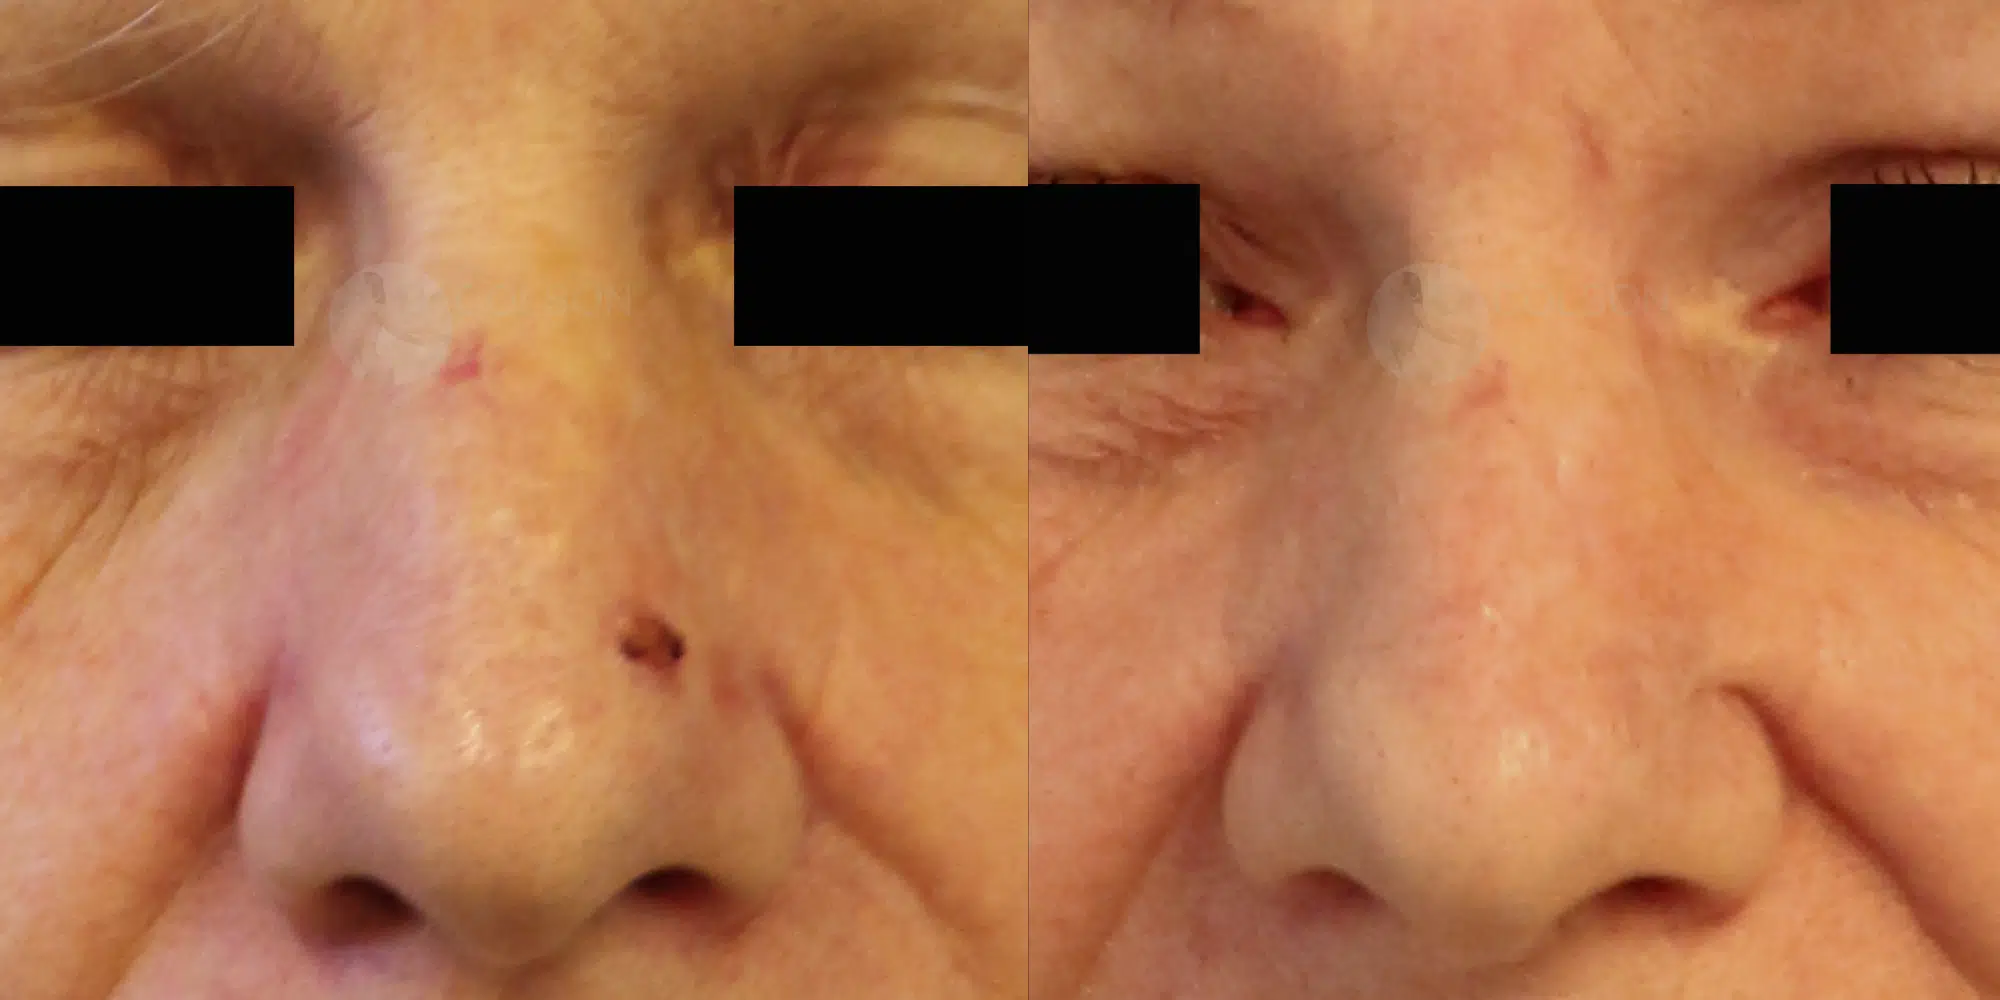 Dr Colson - Chirurgie peau - Tumeur cutanee Face